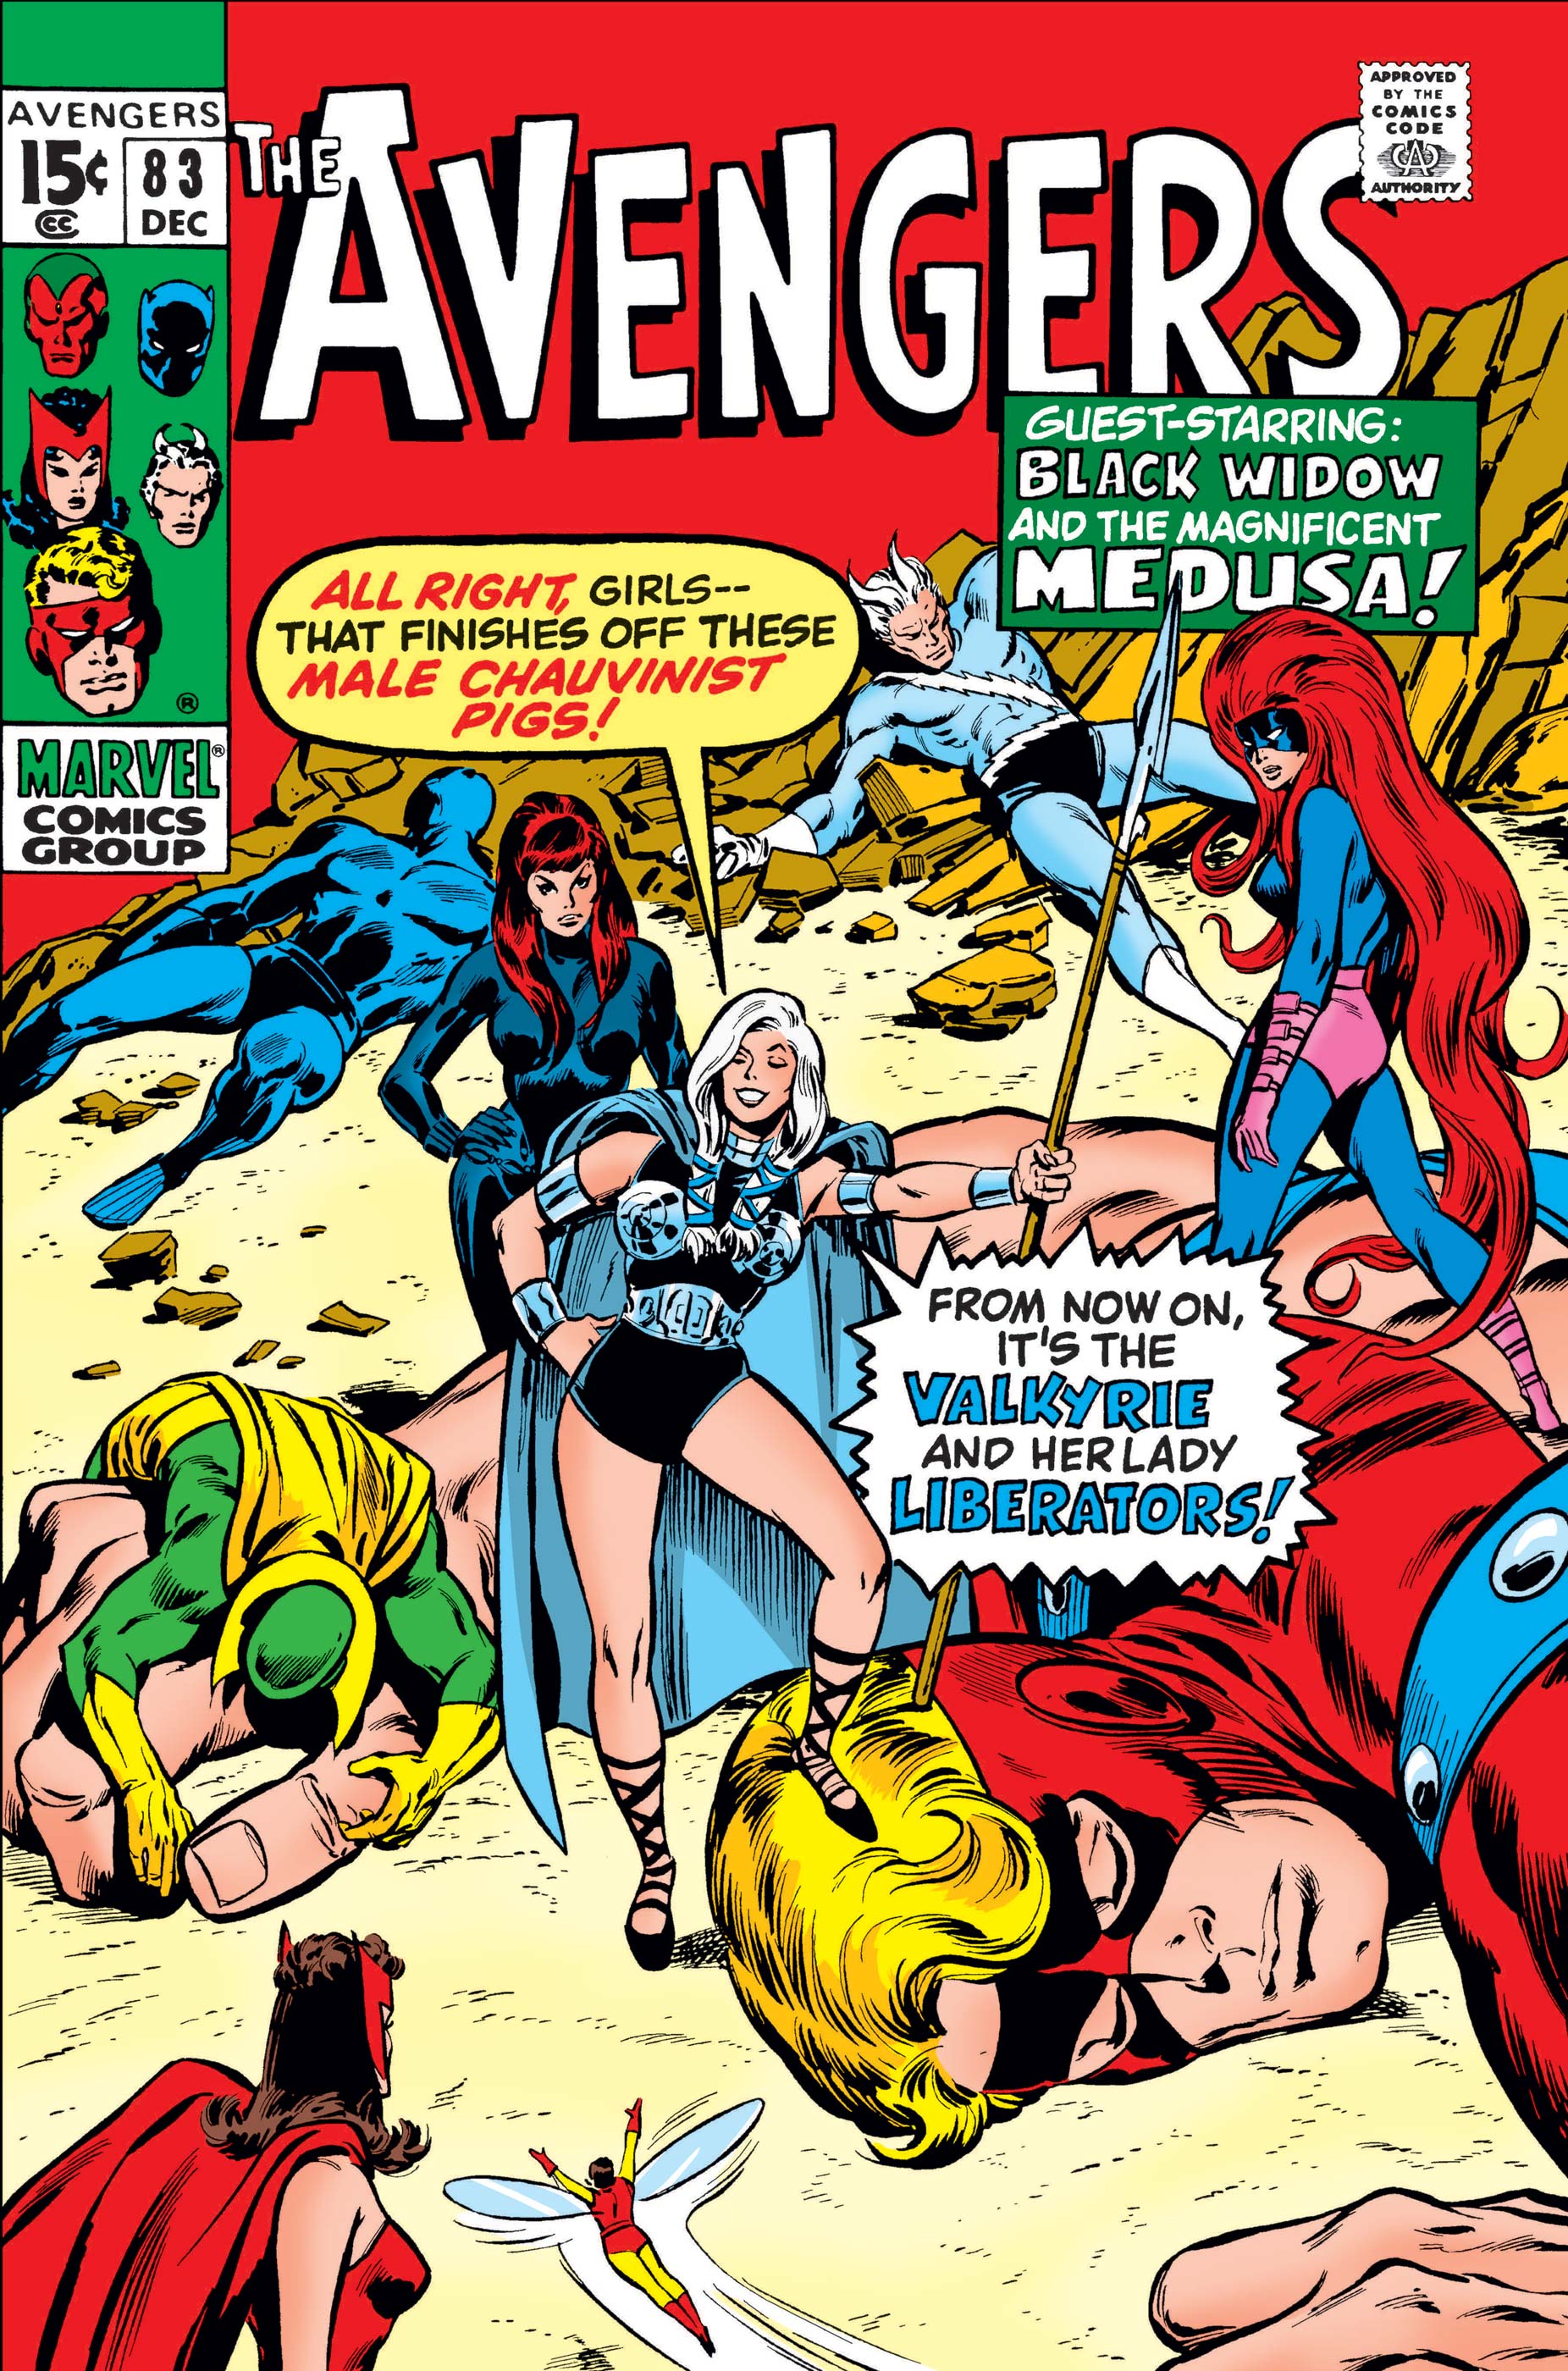 Avengers (1963) #83 | Comic Issues | Marvel